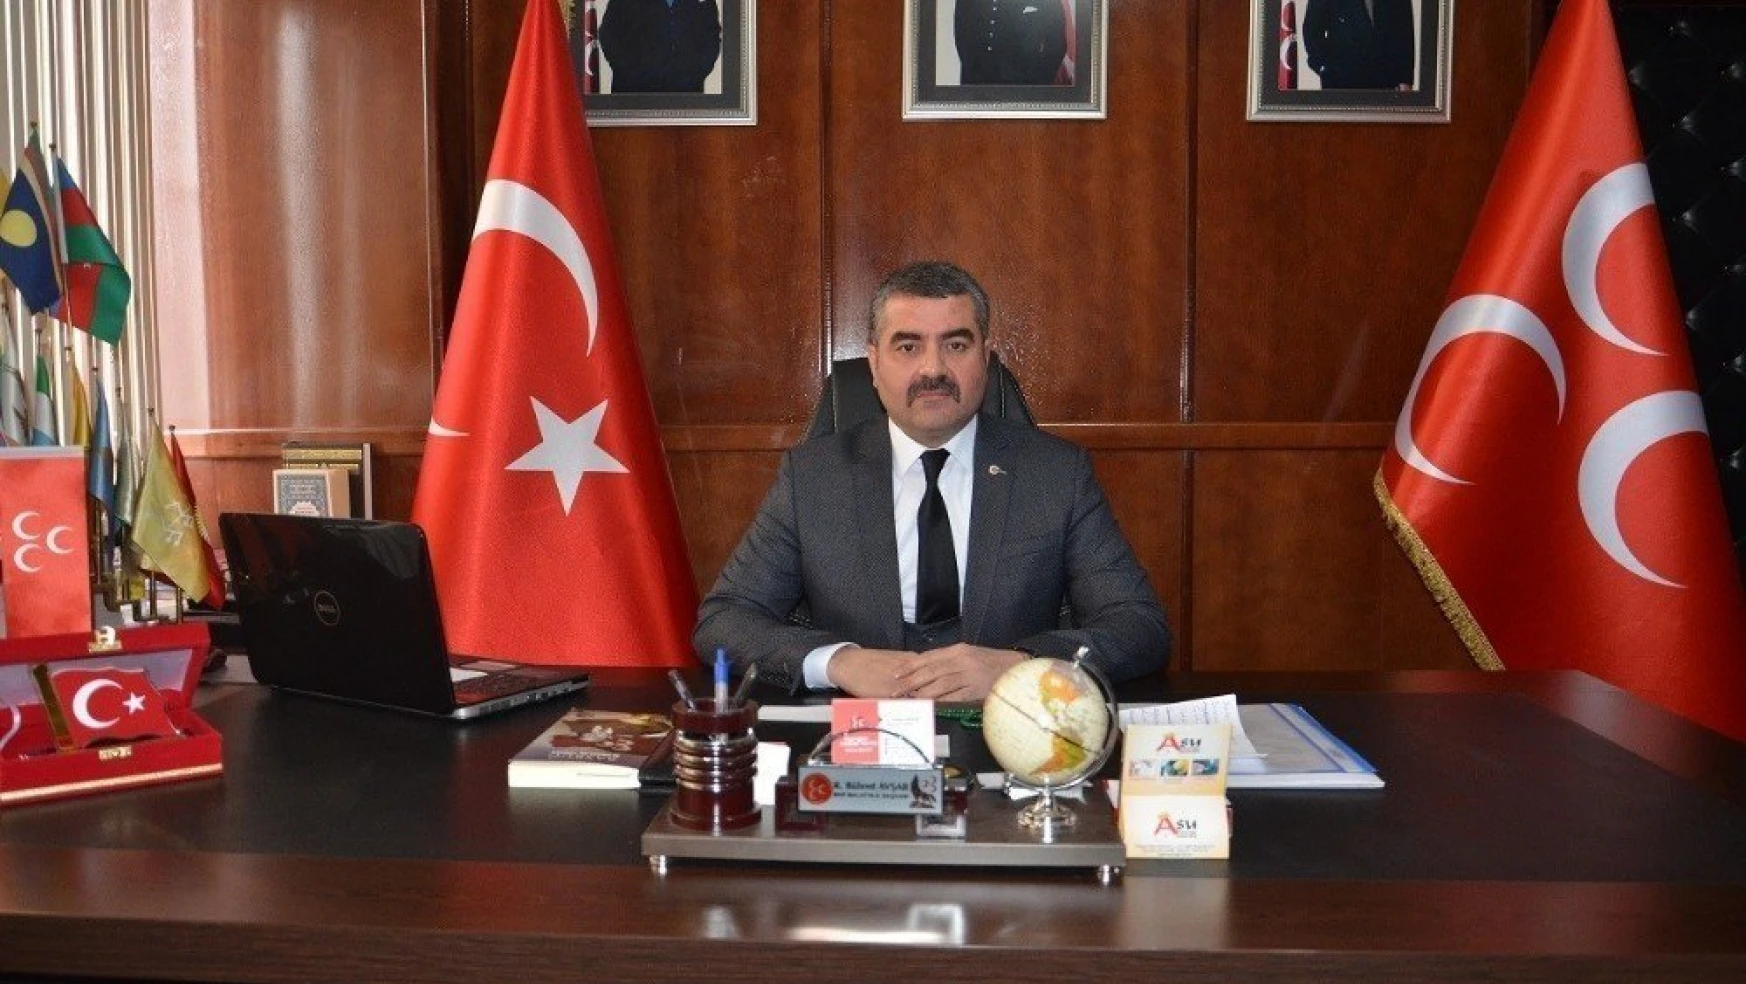 Avşar, Emniyet Teşkilatının 173. kuruluş yıldönümünü kutladı
